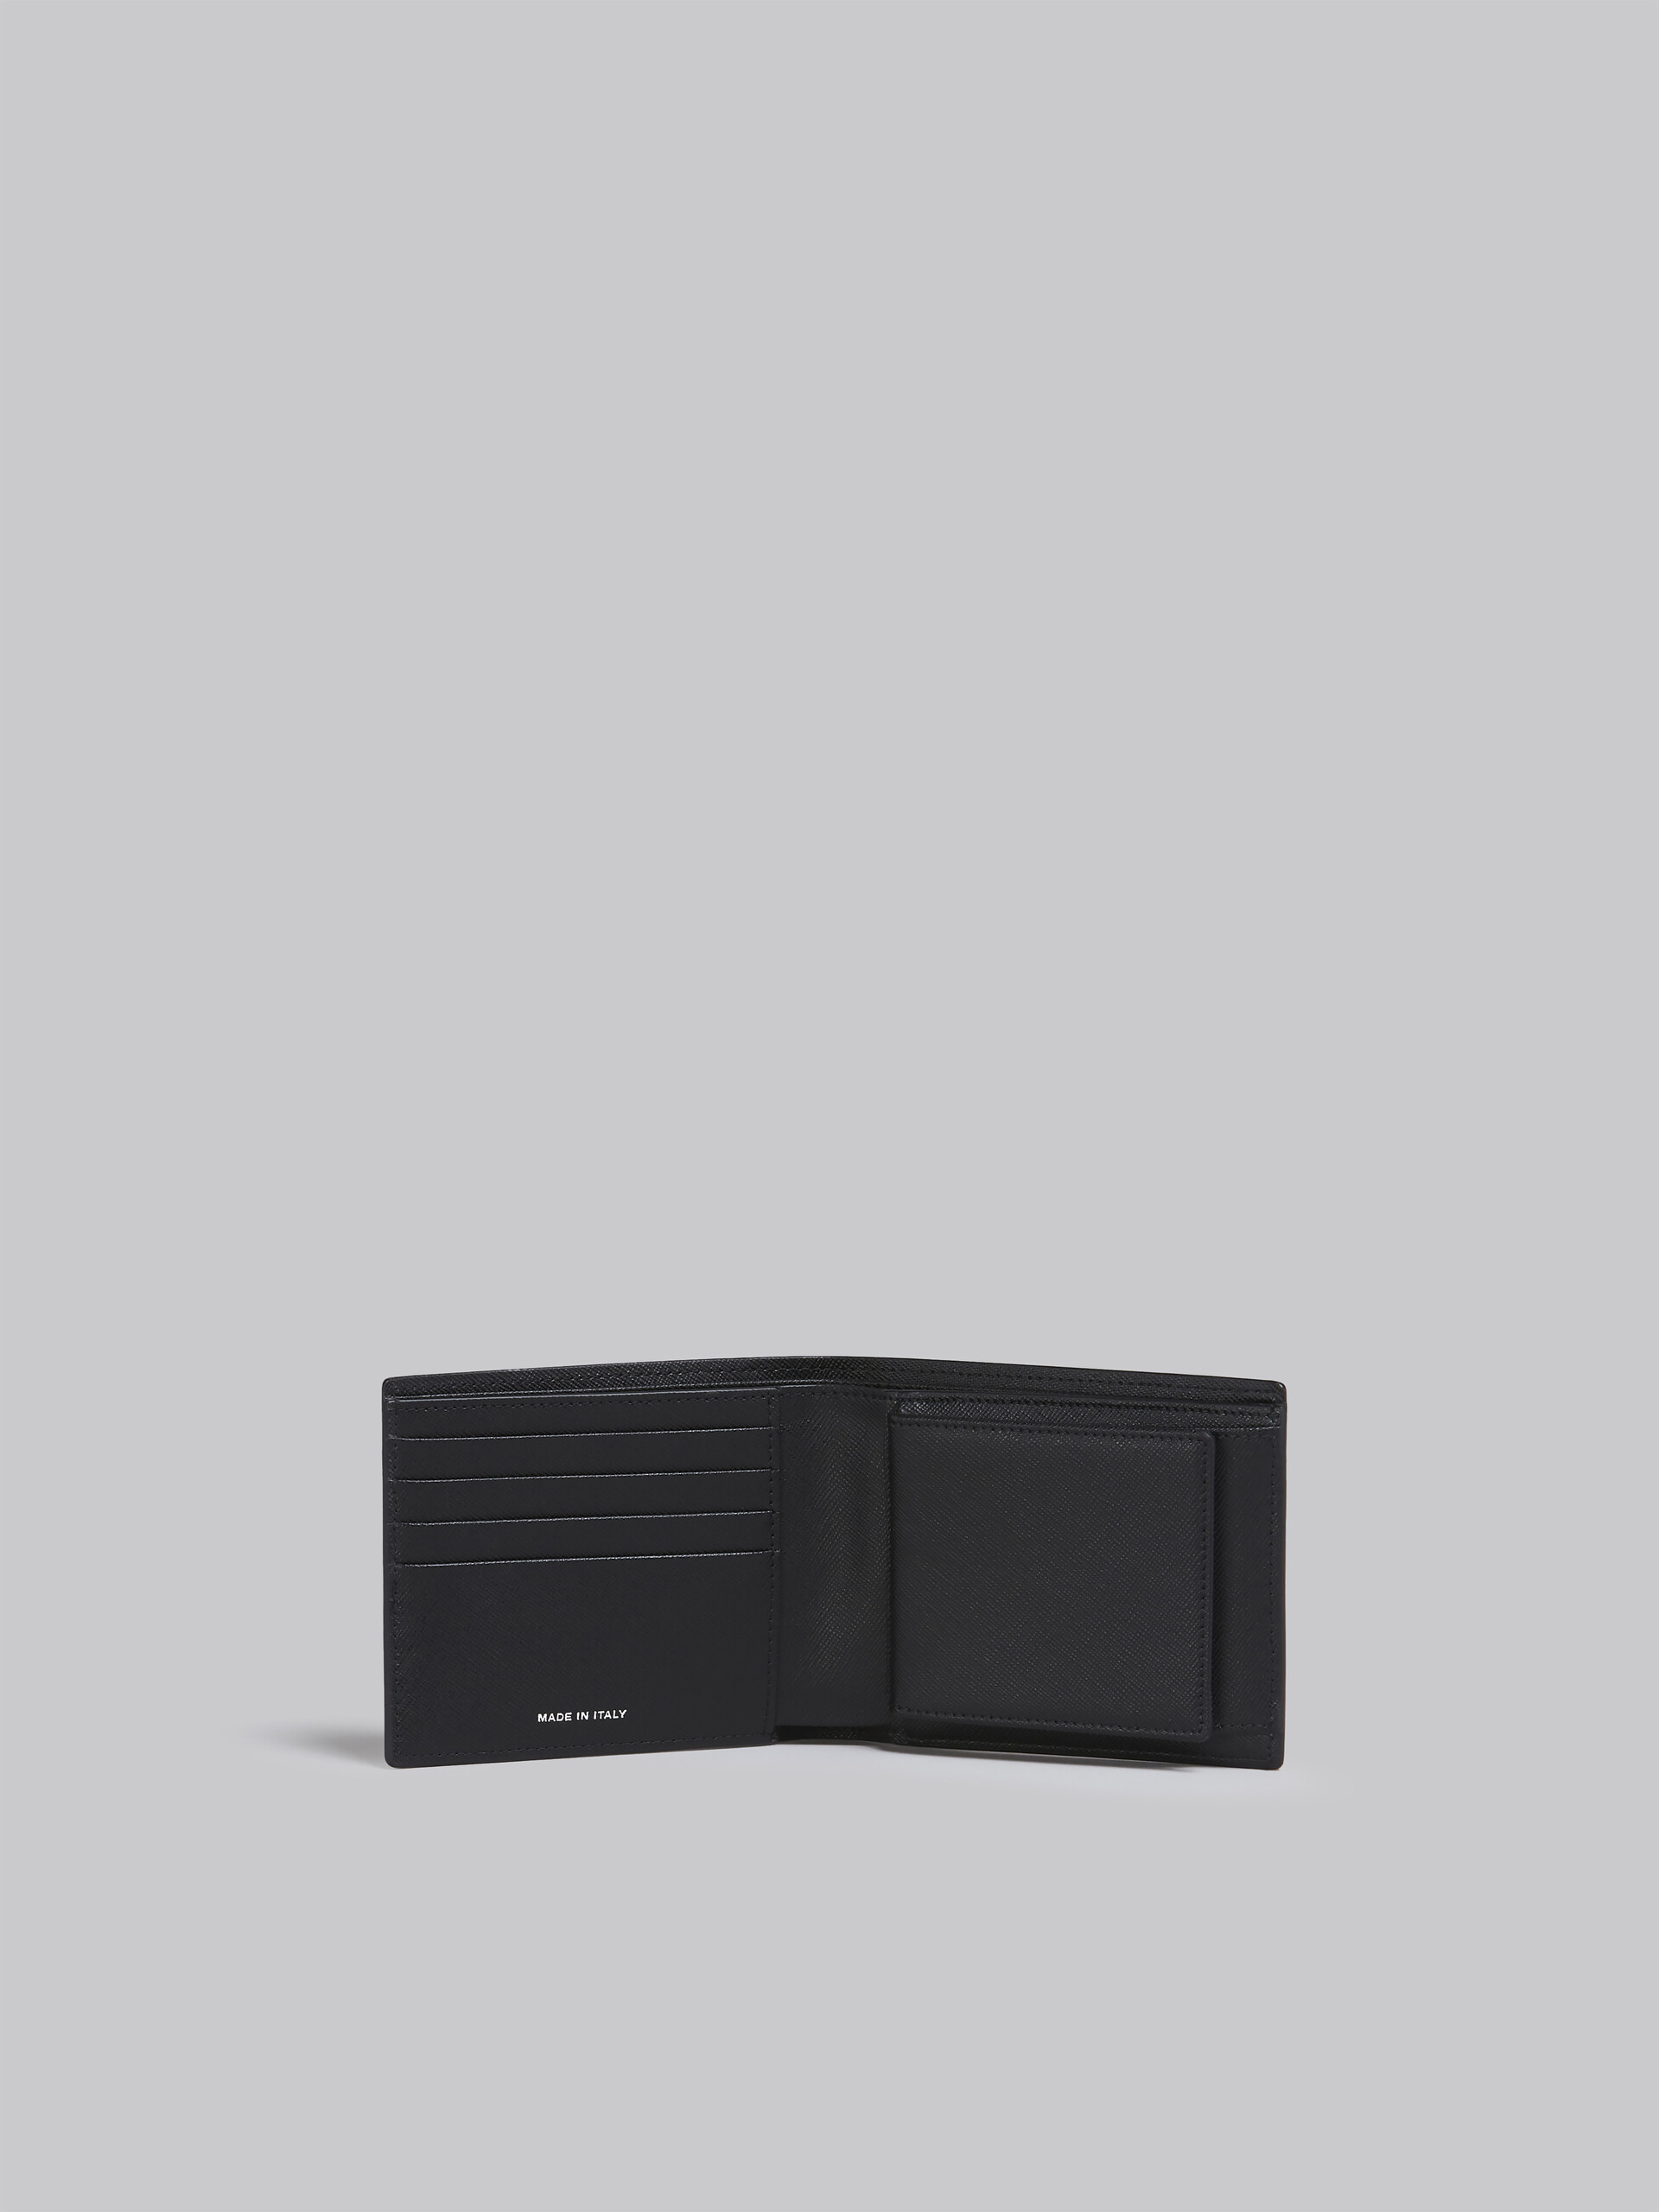 Portafoglio bi-fold in saffiano nero e blu - Portafogli - Image 2